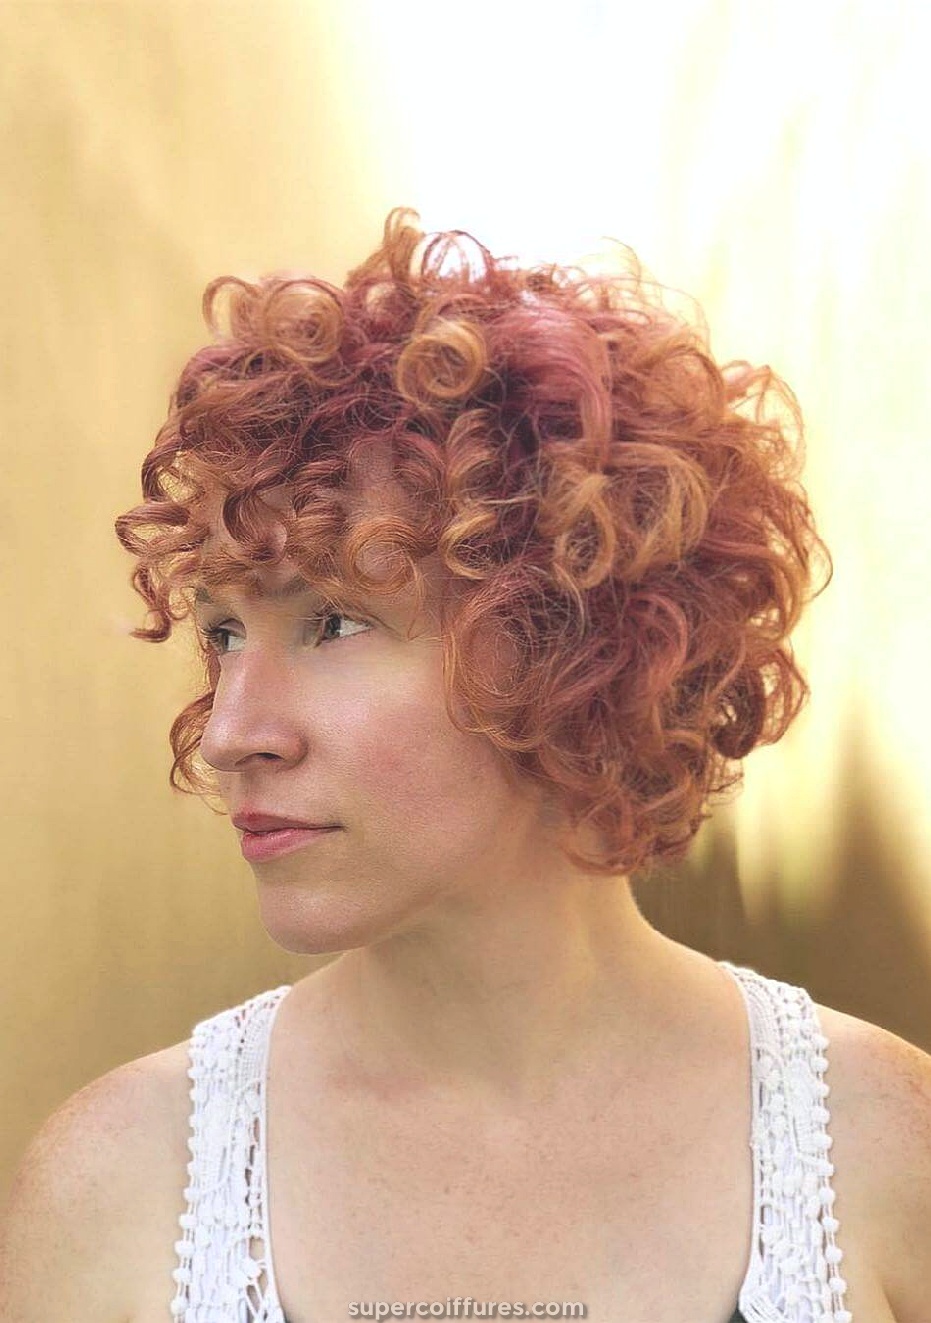 20 coiffures frisées courtes pour que les femmes aient l'air vivantes